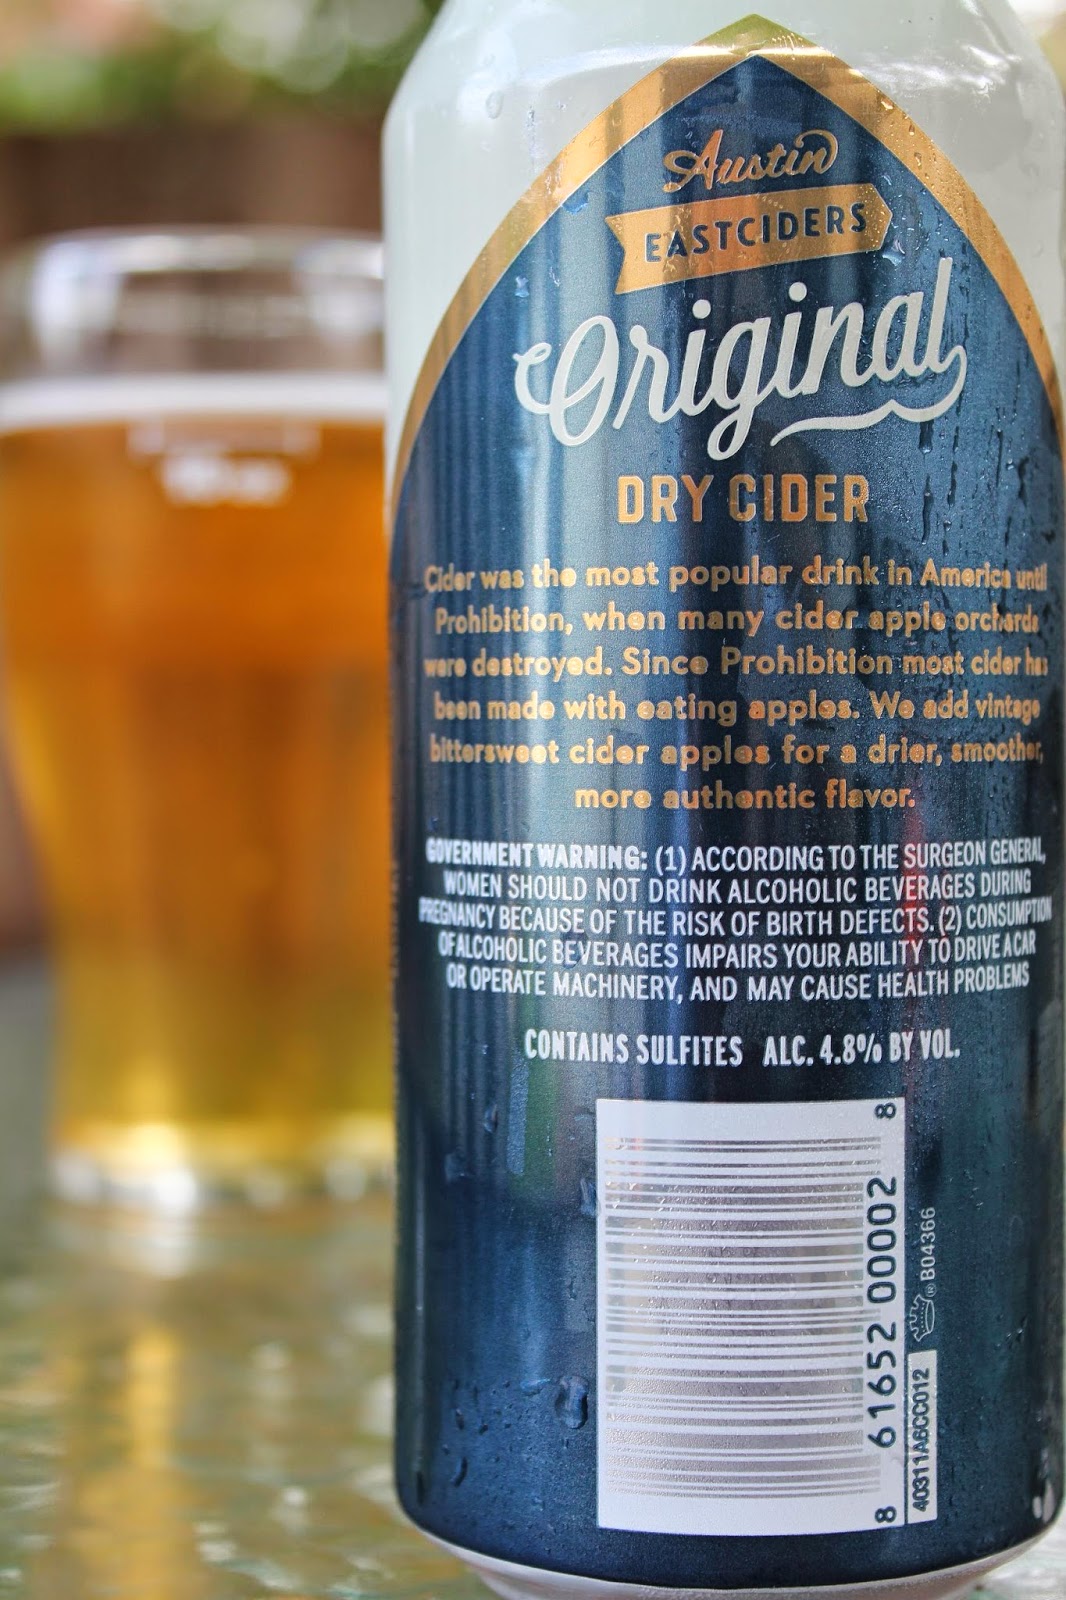 THE BRÜ: The Brü Revü – Austin Eastciders Original Dry Cider